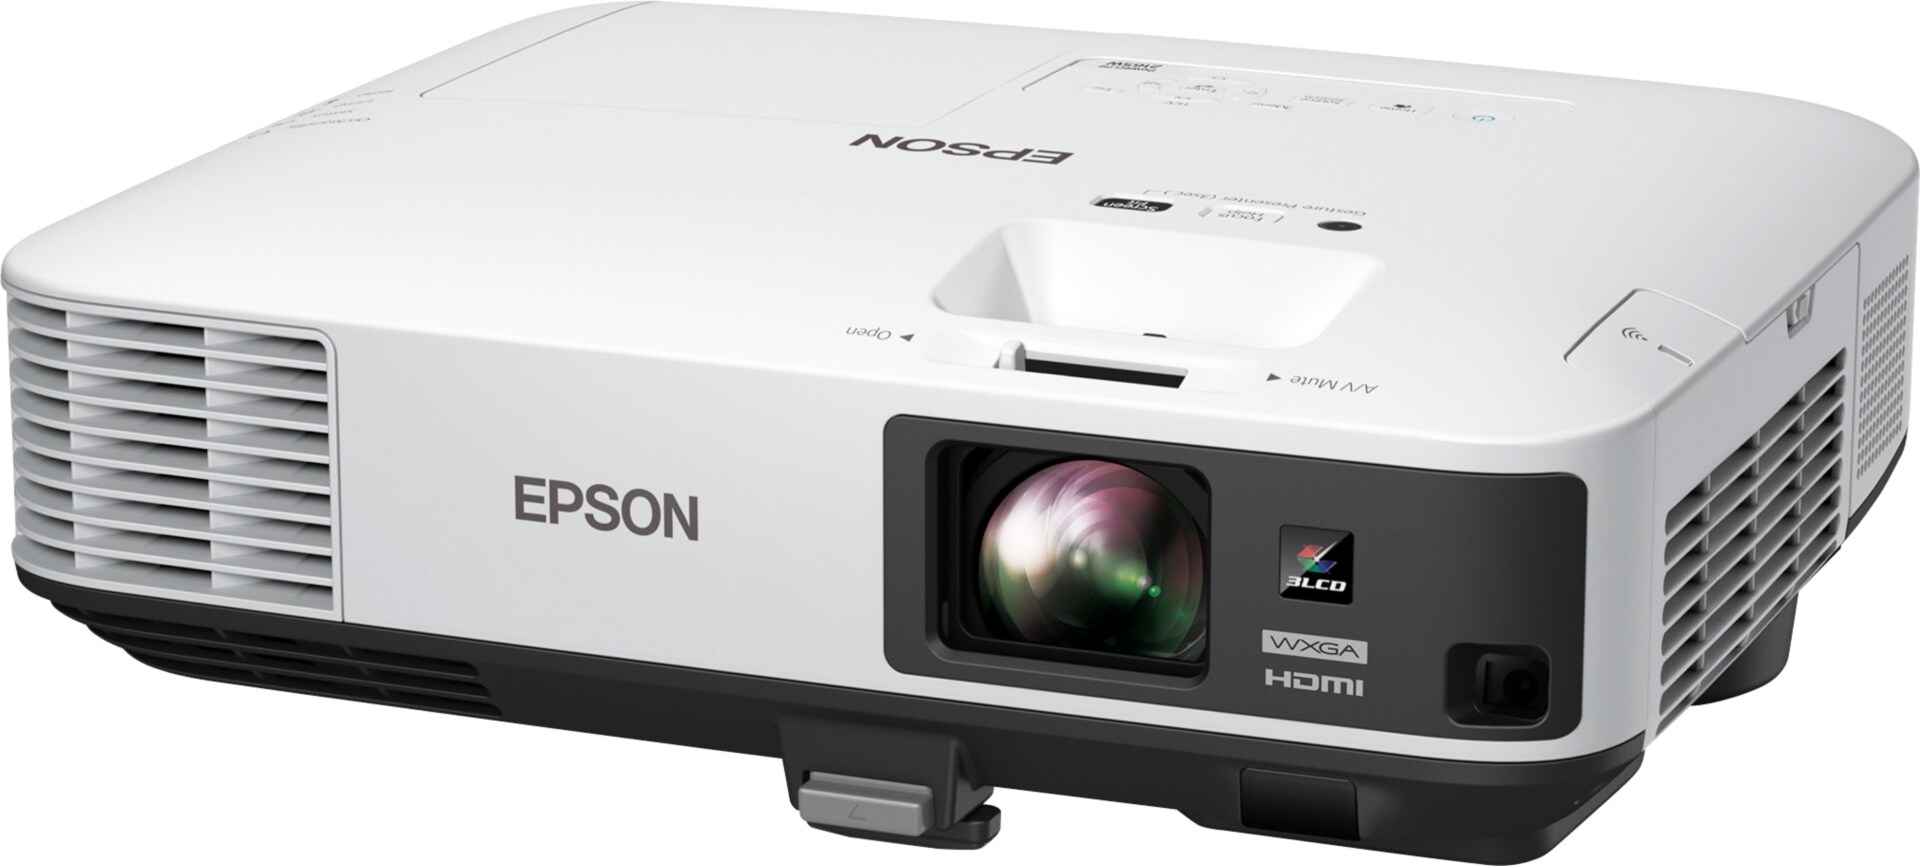 Epson PowerLite 2165W - 3LCD projector - 802.11n wireless / LAN / Miracast